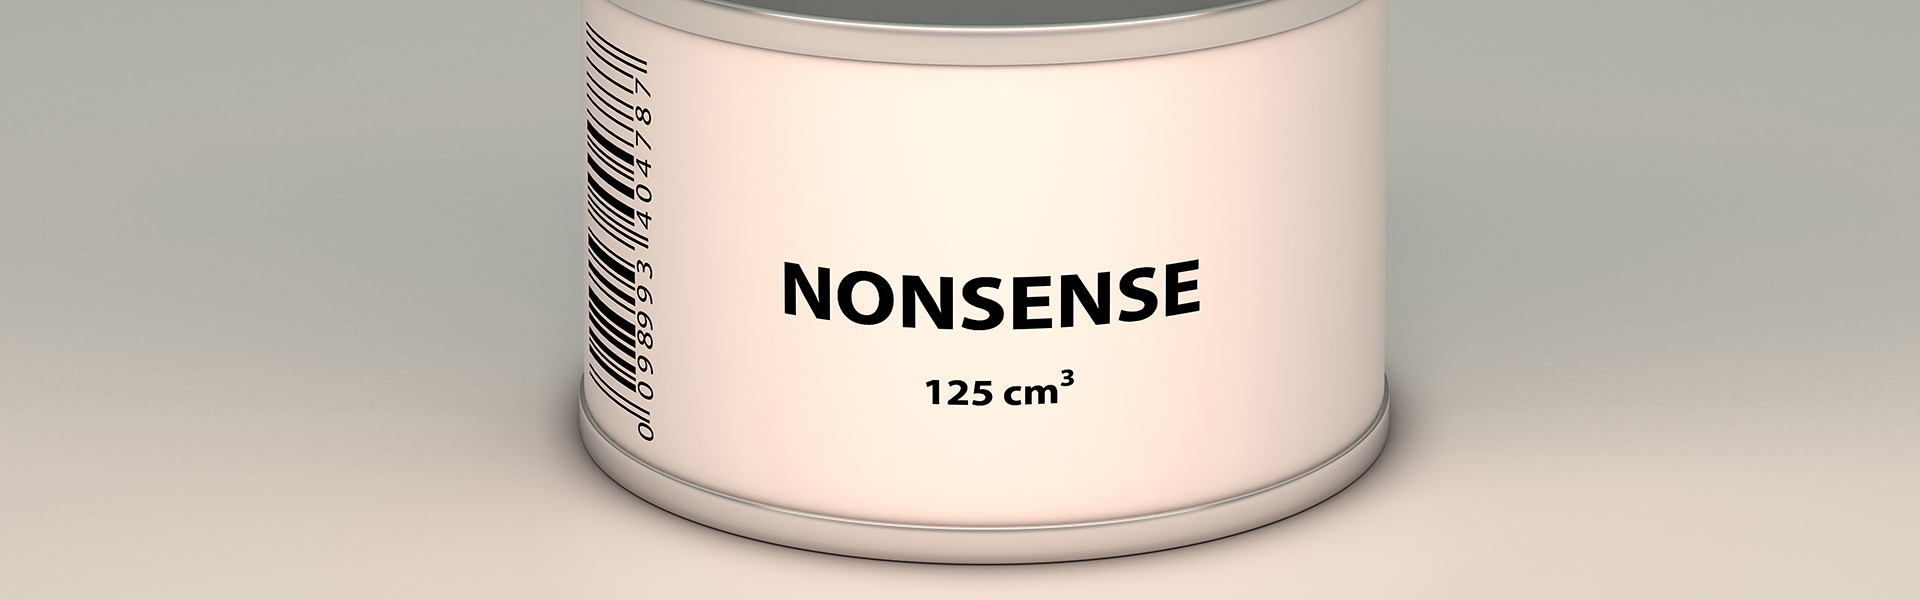 Konservendose mit der Aufschrift "NONSENSE 125 Kubikzentimeter"